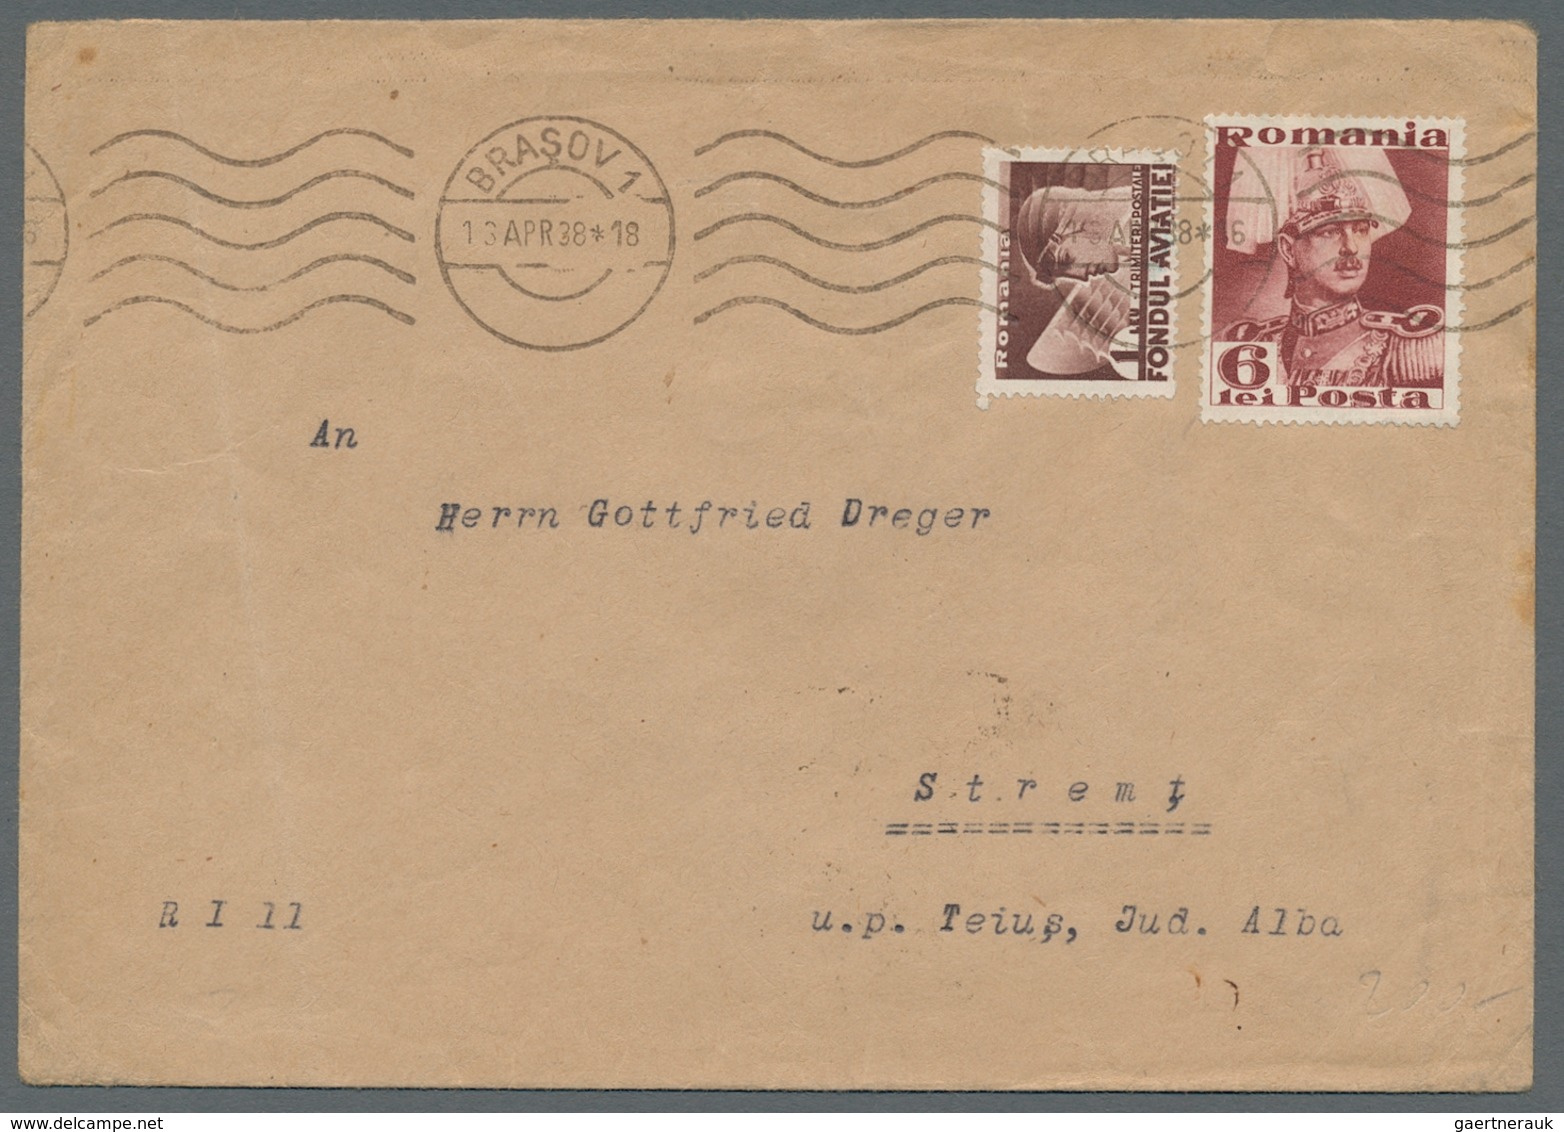 Thematik: Konsulatspost / consular mail: 1914/1958, Post von deutschen Konsulaten in Südafrika, Ägyp